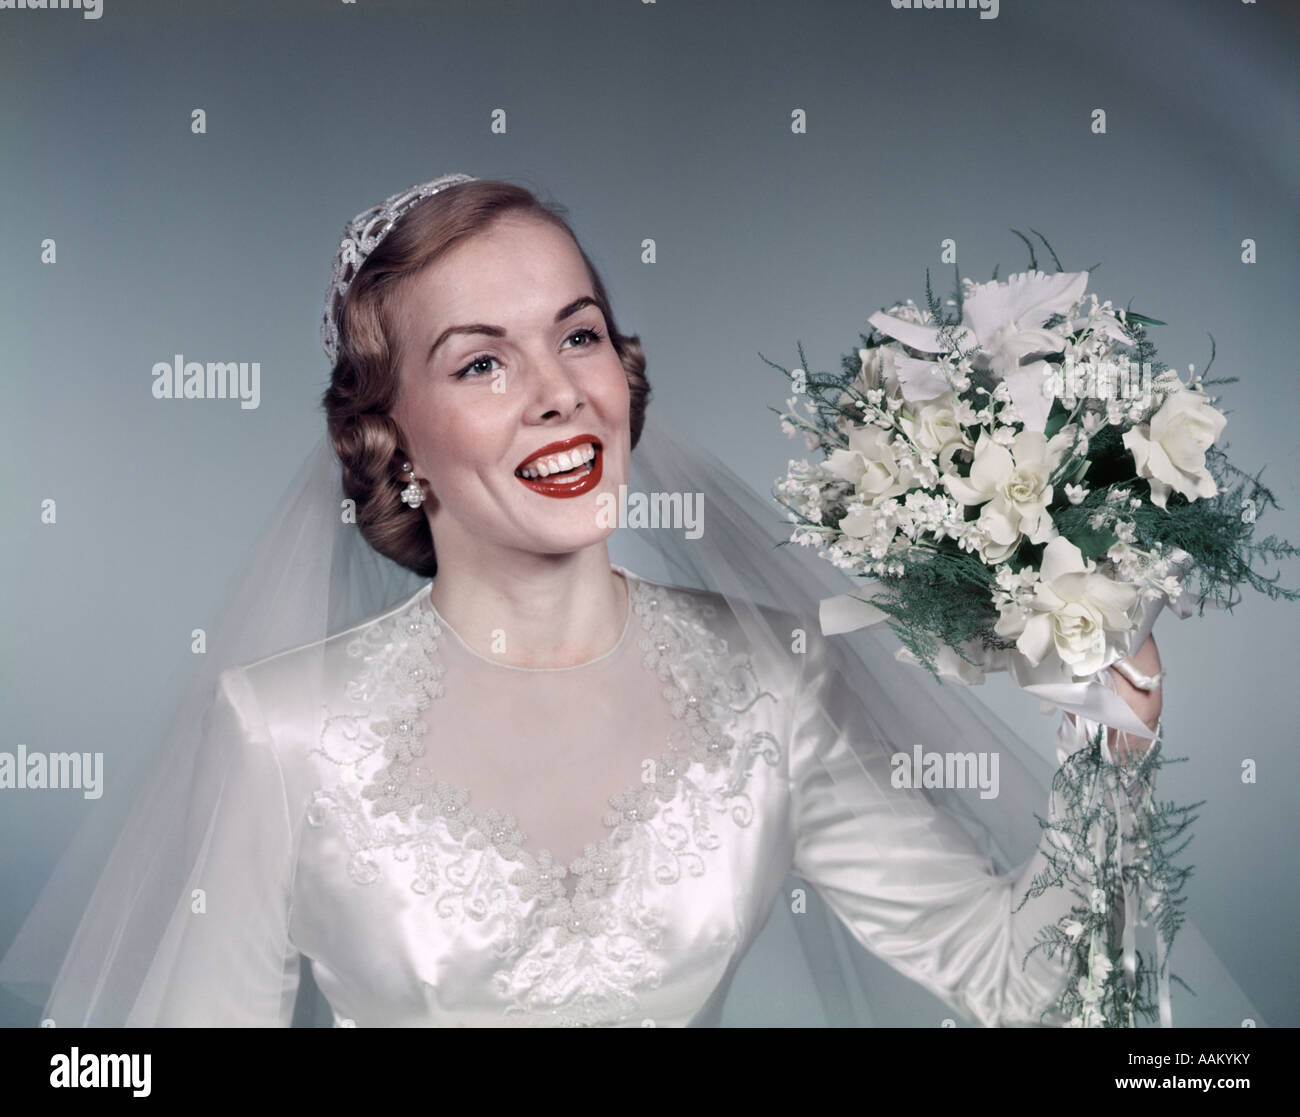 1950 BLONDE BRIDE SMILING HOLDING À PROPOS DE JETER DES FLEURS bouquet de mariée blanc dentelle robe voile FASHION Banque D'Images